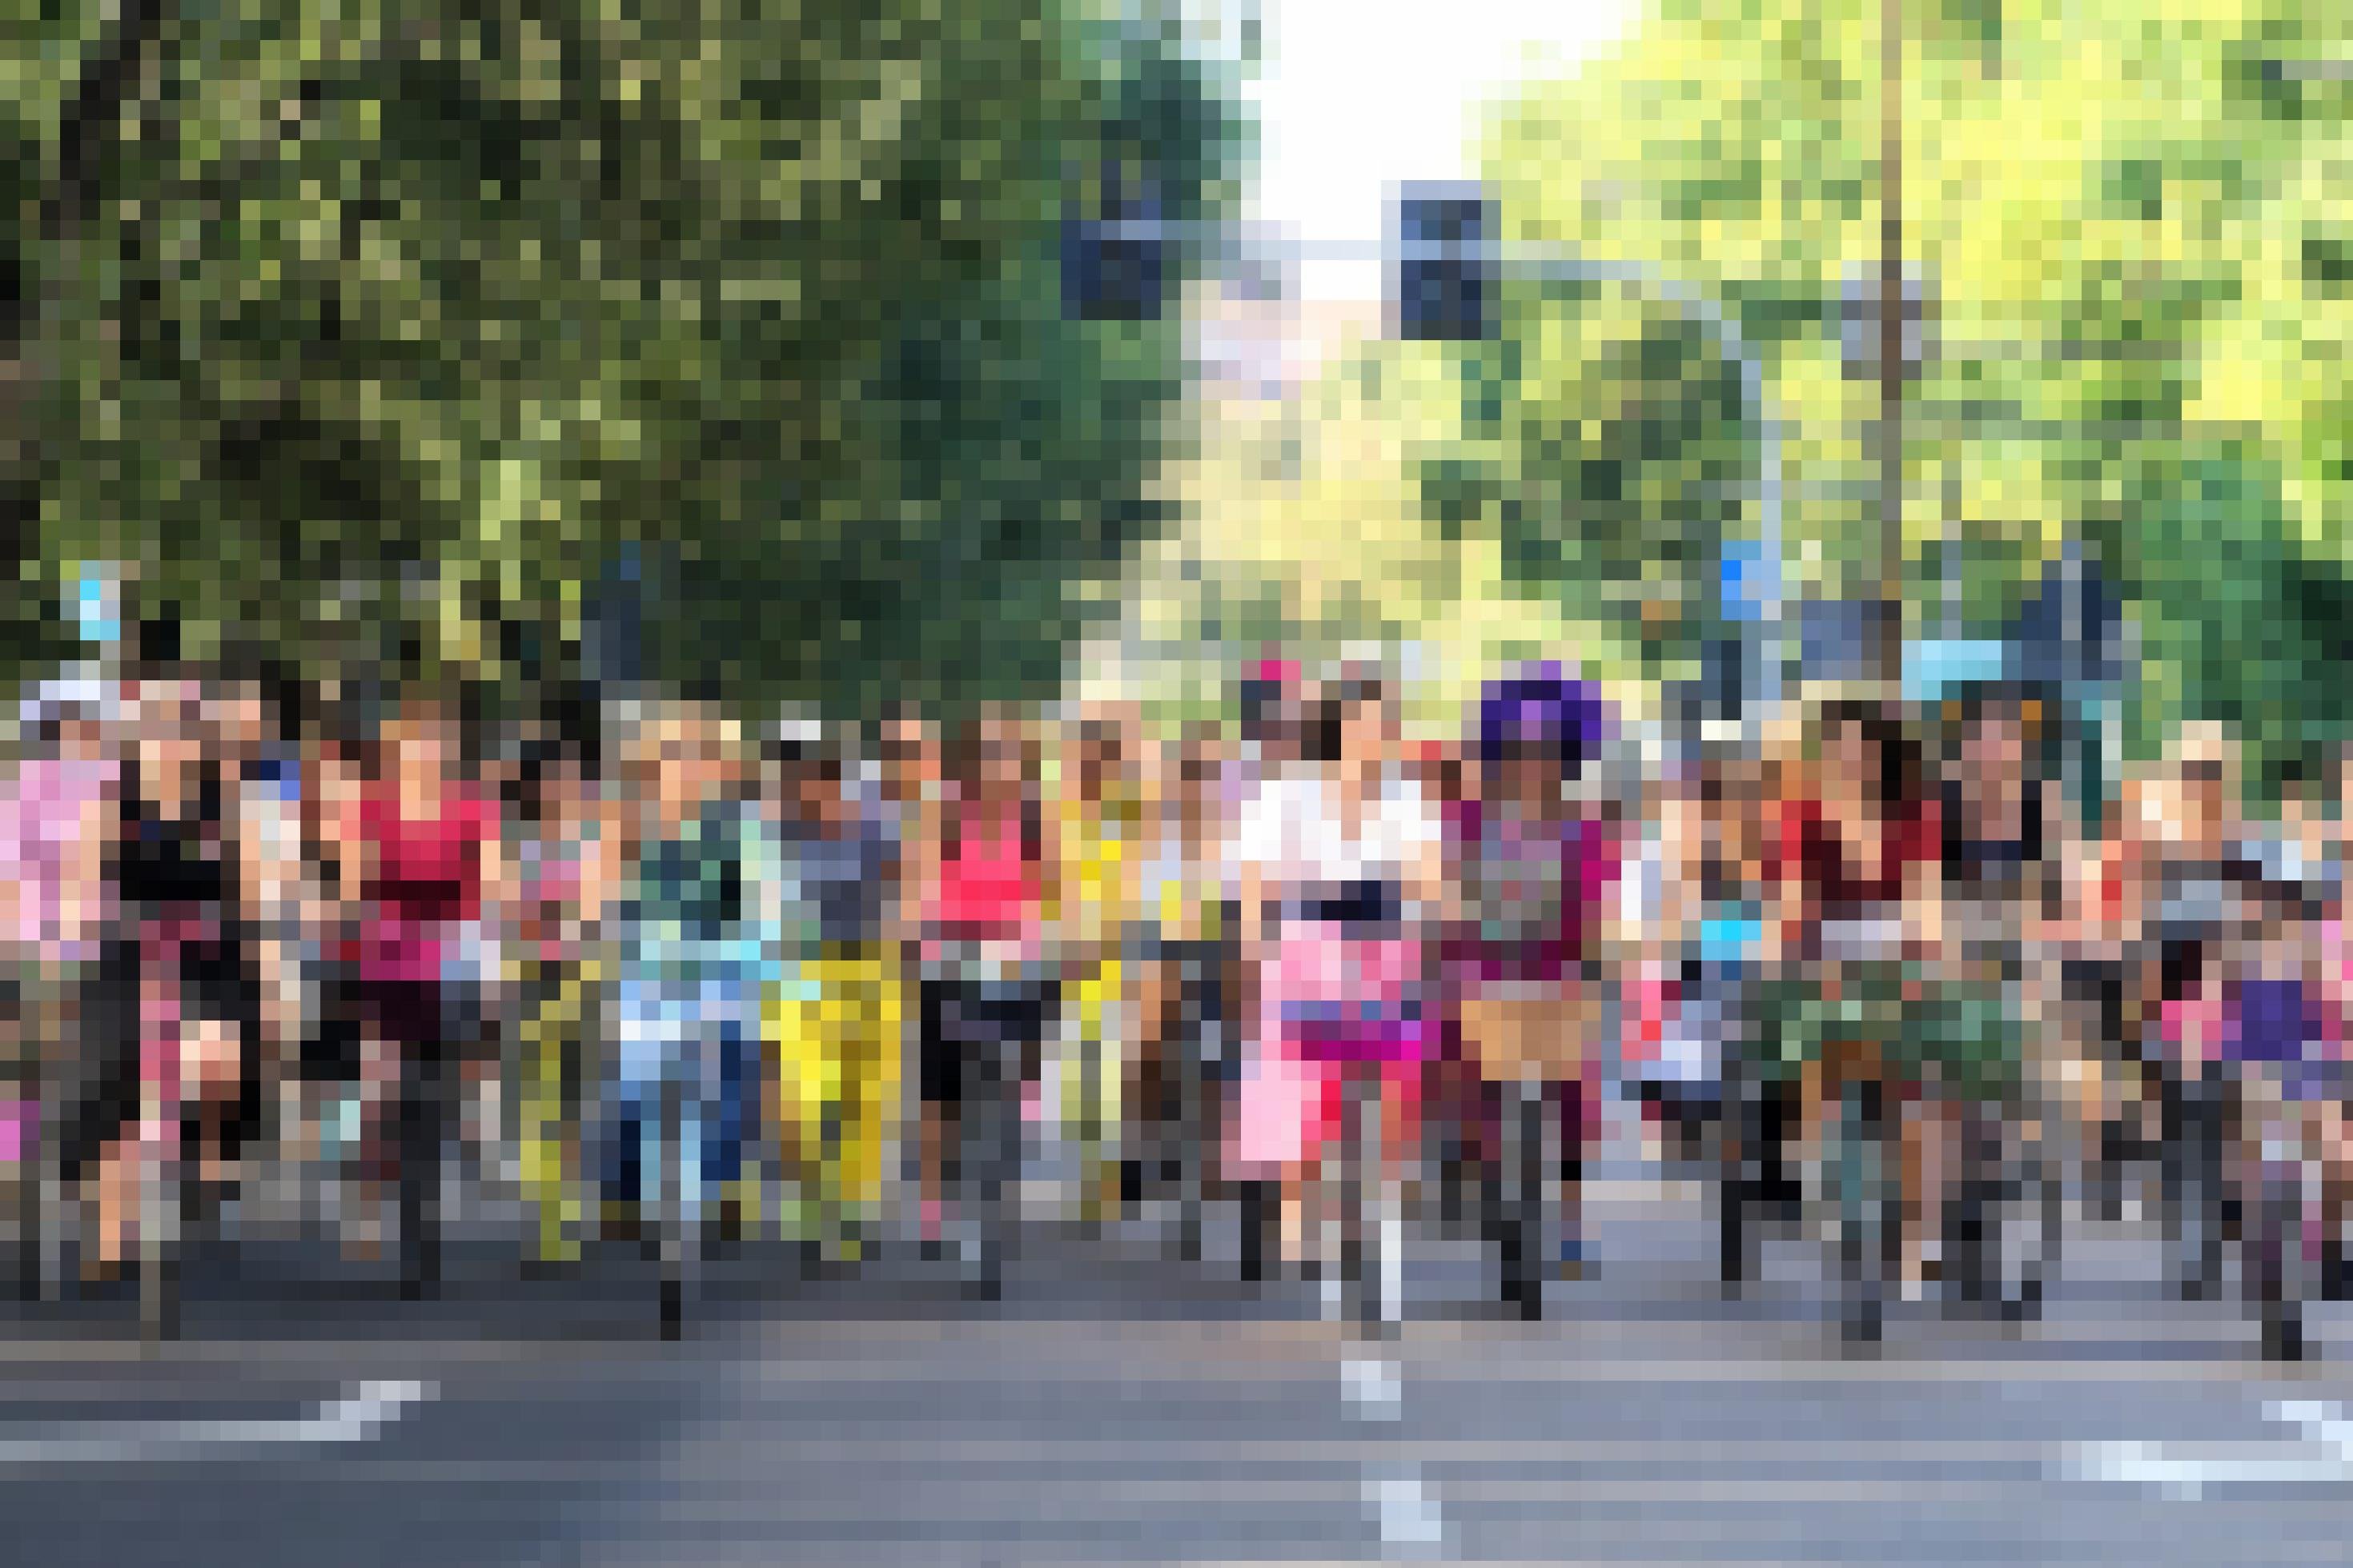 Beim autofreien Sonntag fahren in Milano Frauen und Kinder dicht gedrängt über zwei breite Fahrspuren. Sie tragen bunte Kleider und Hosen und haben ihre Räder mit Blumen und Girlanden geschmückt.